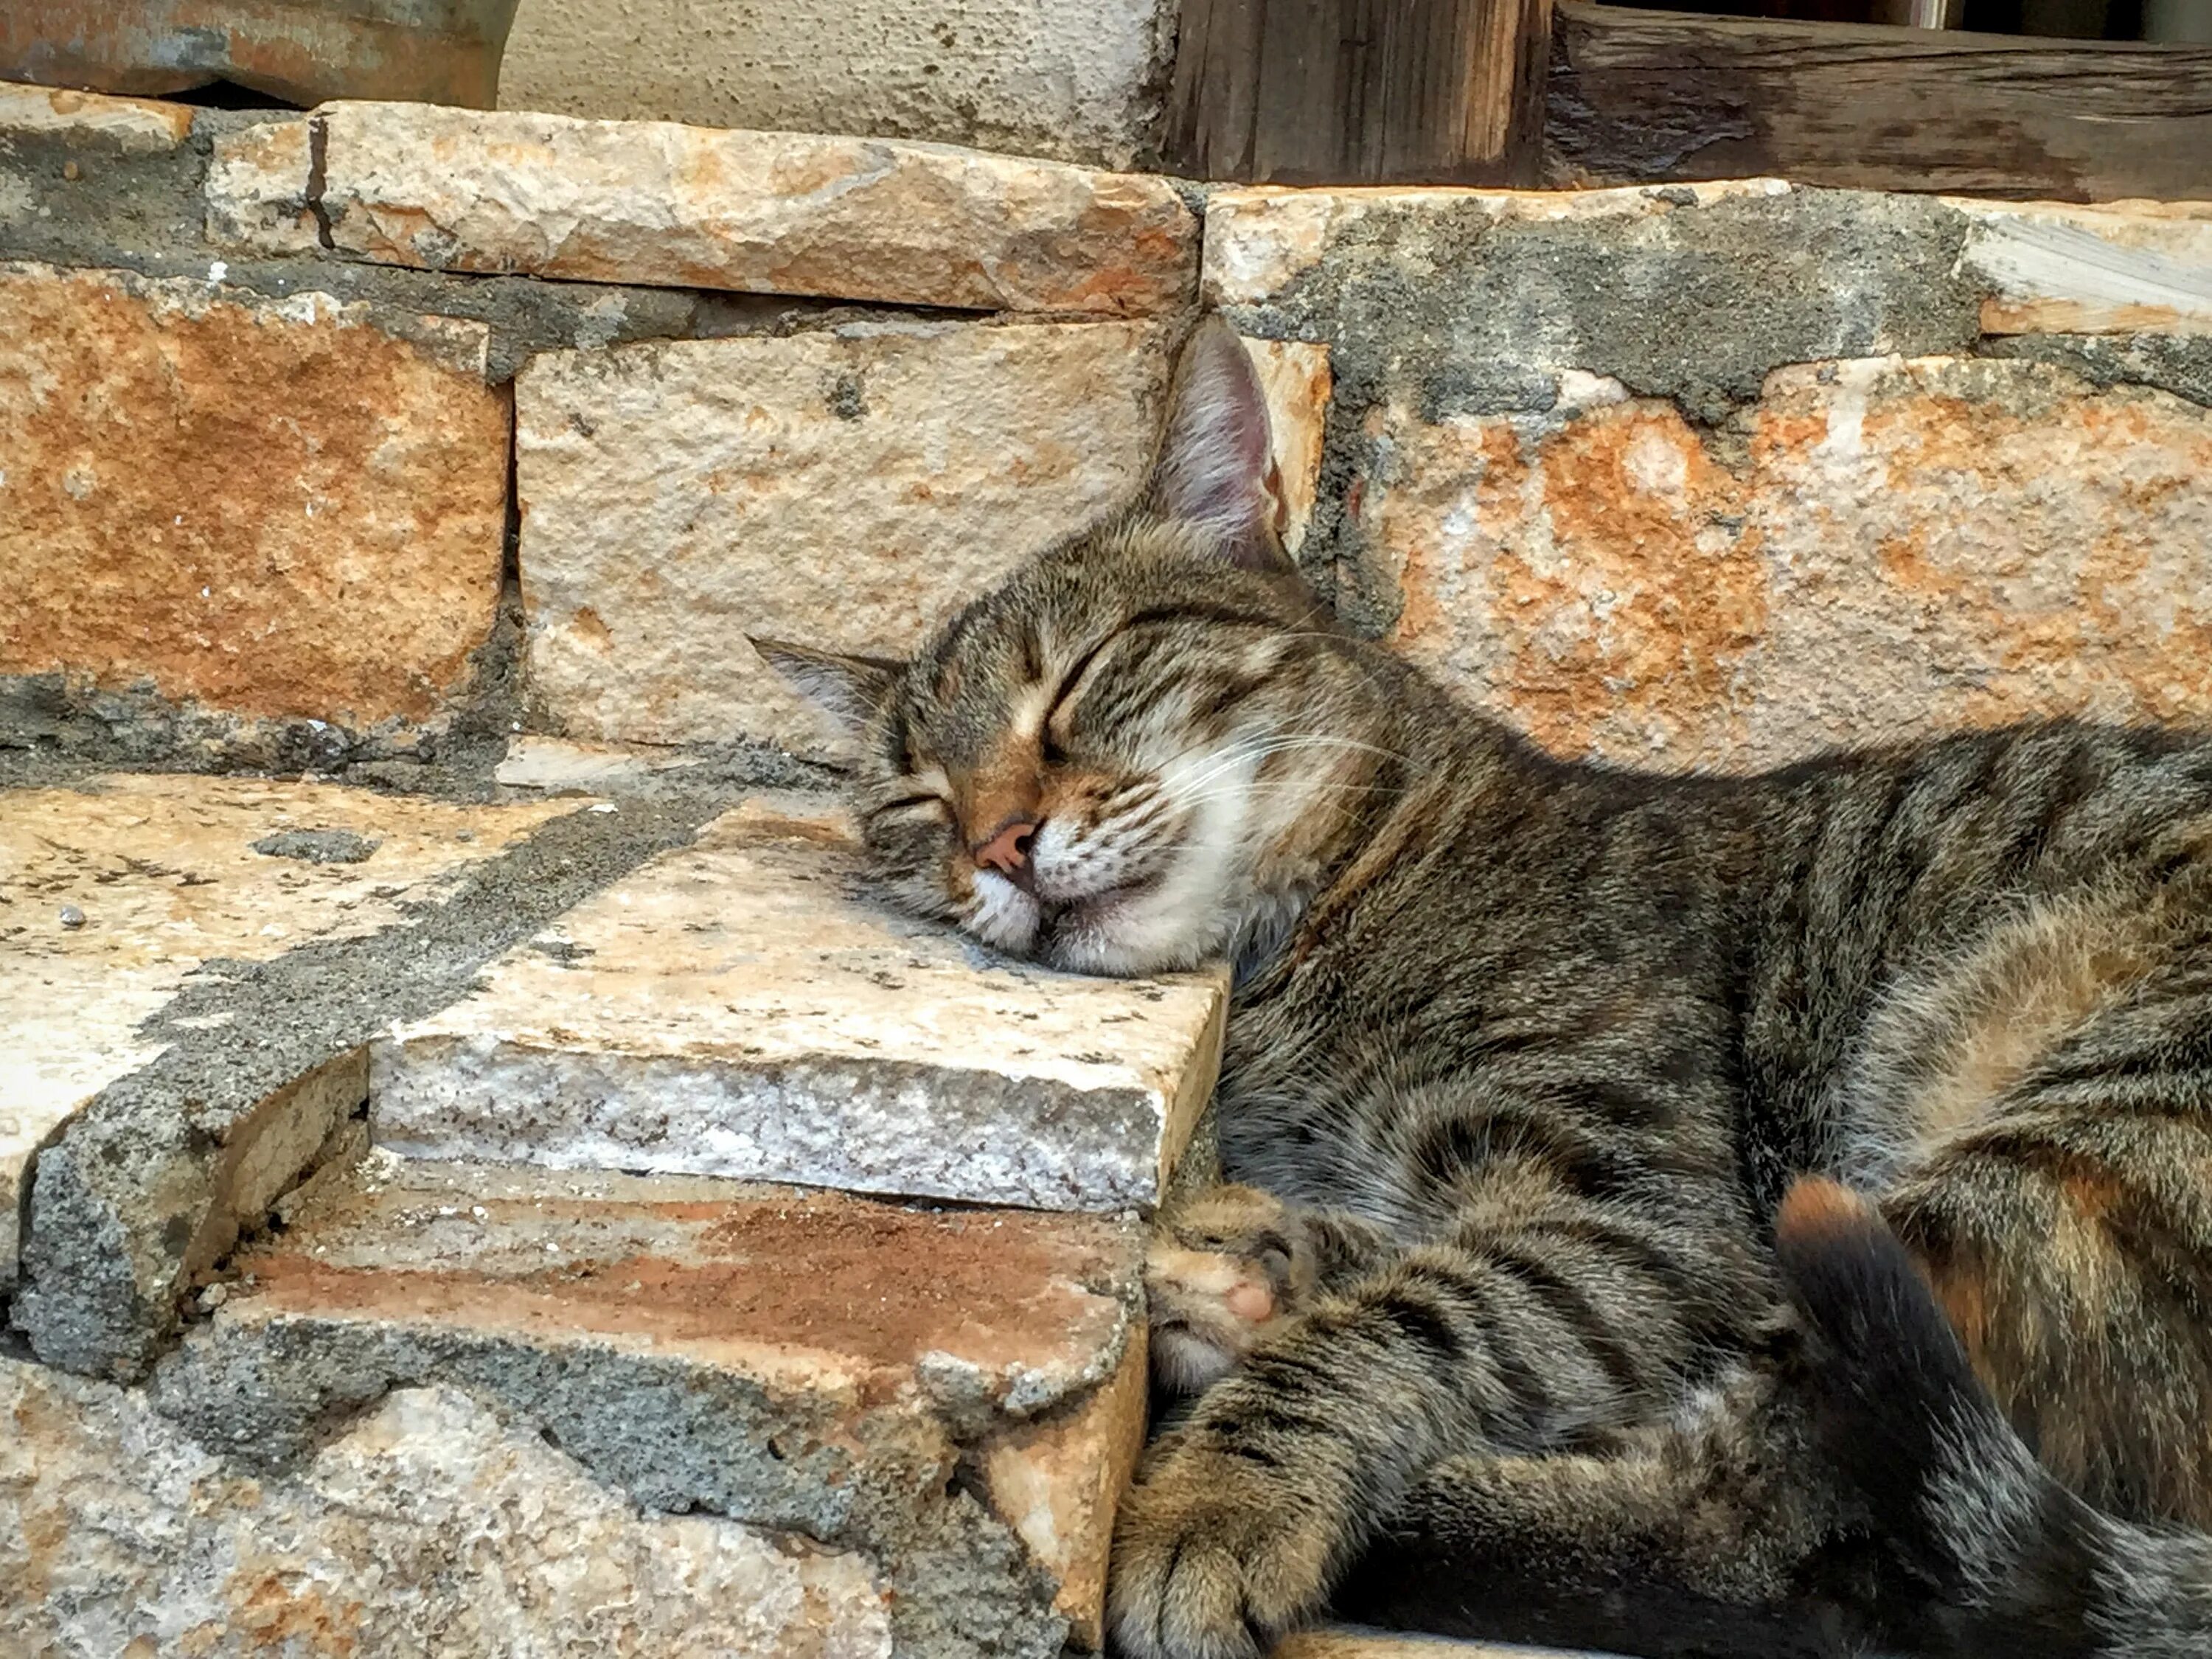 Turkey cats. Стамбульские котики. Турецкие кошки уличные. Кошки в Стамбуле. Город кошек.